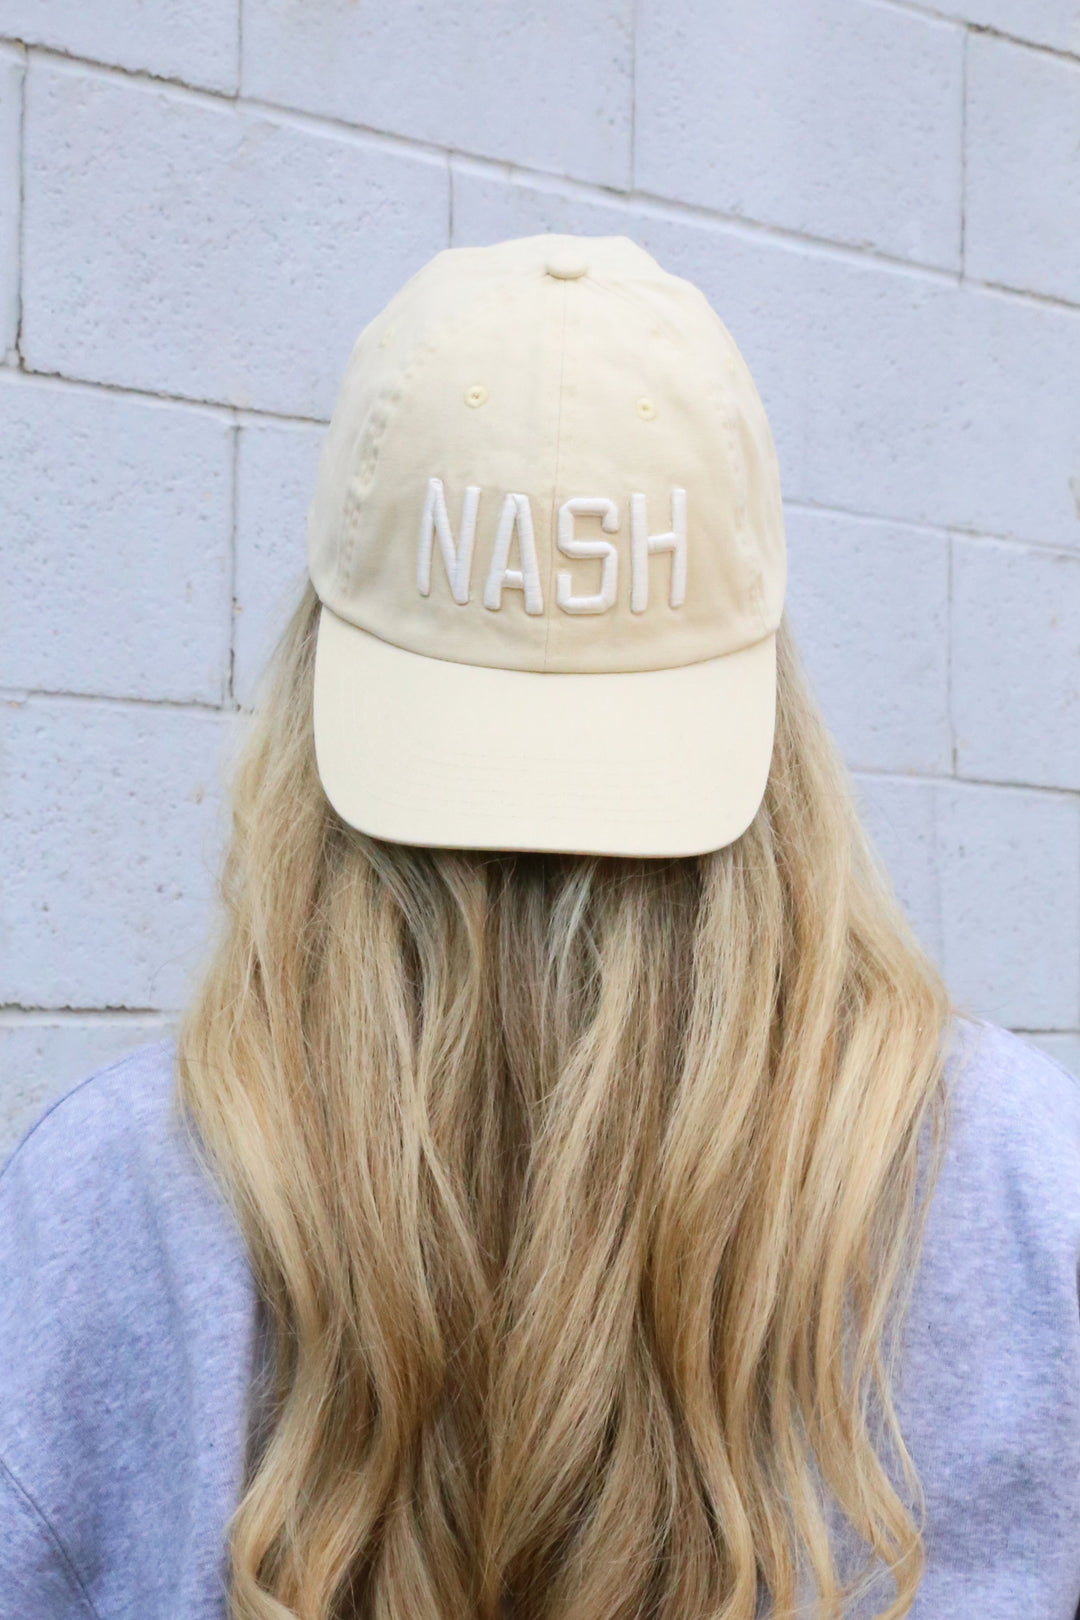 NASH Ball Cap [Cream] – The Nash Collection